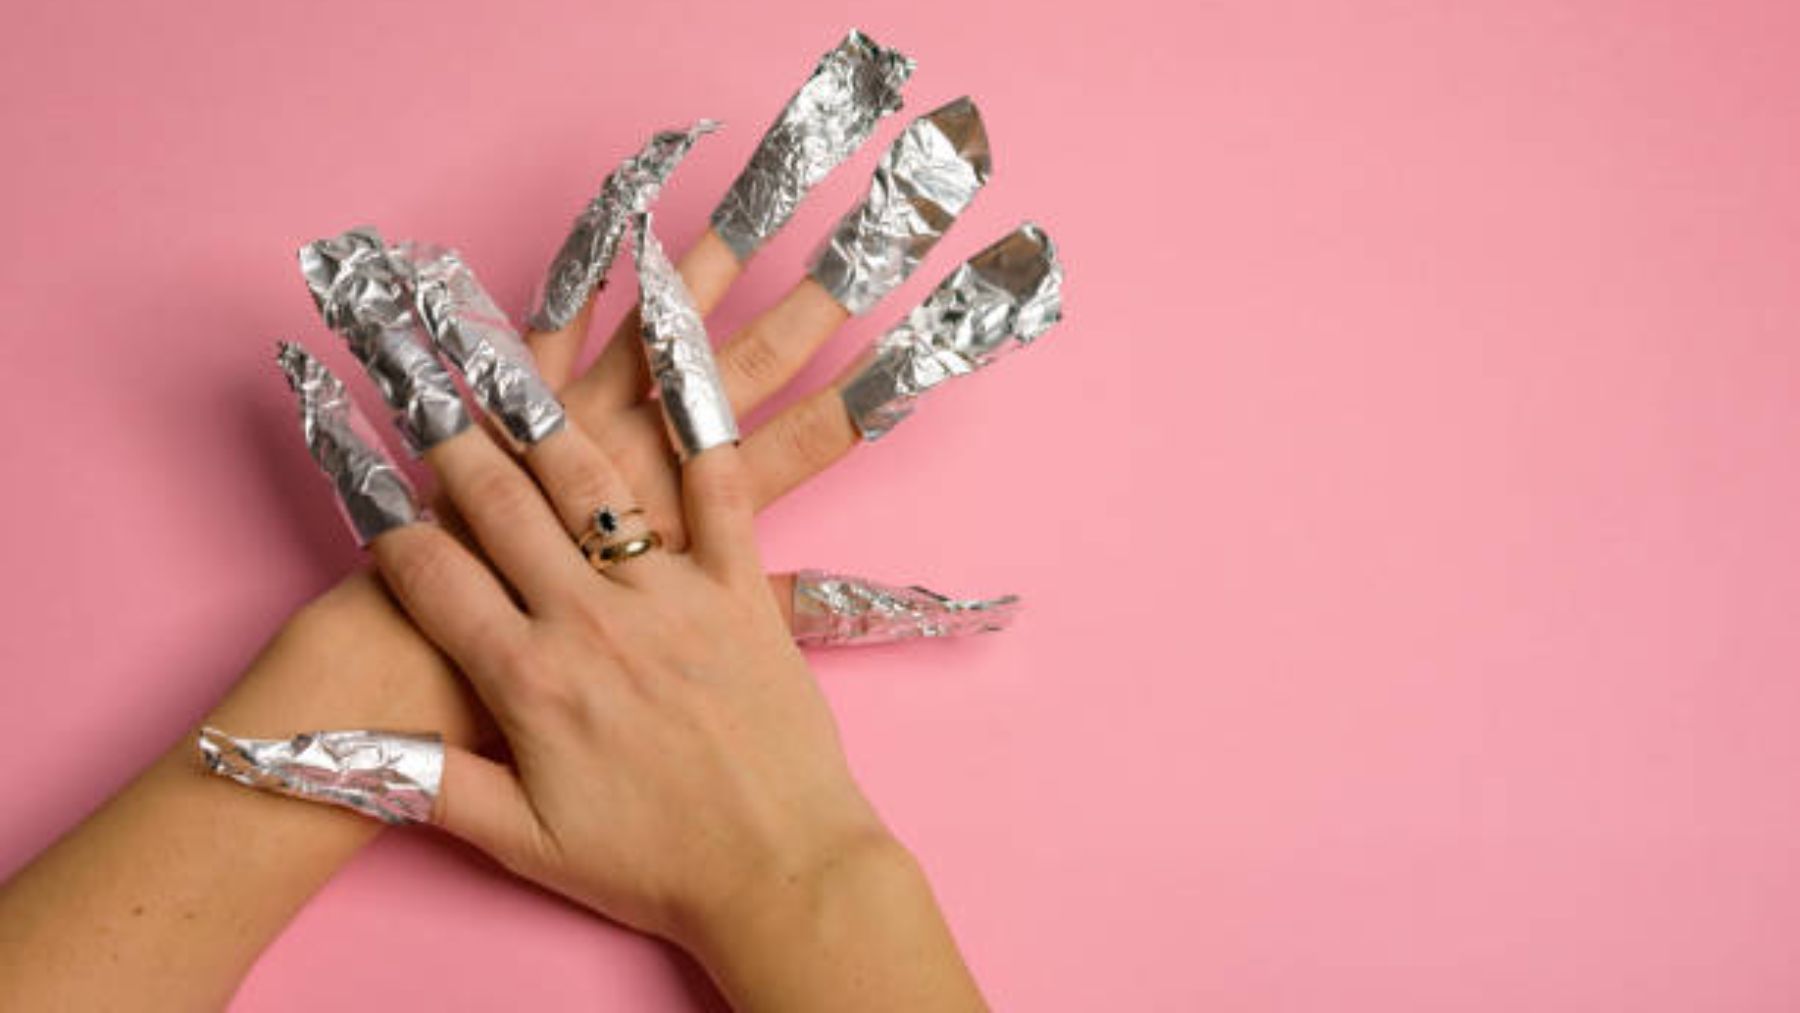 Todo el mundo se está poniendo papel de aluminio en las uñas y tiene mucho sentido